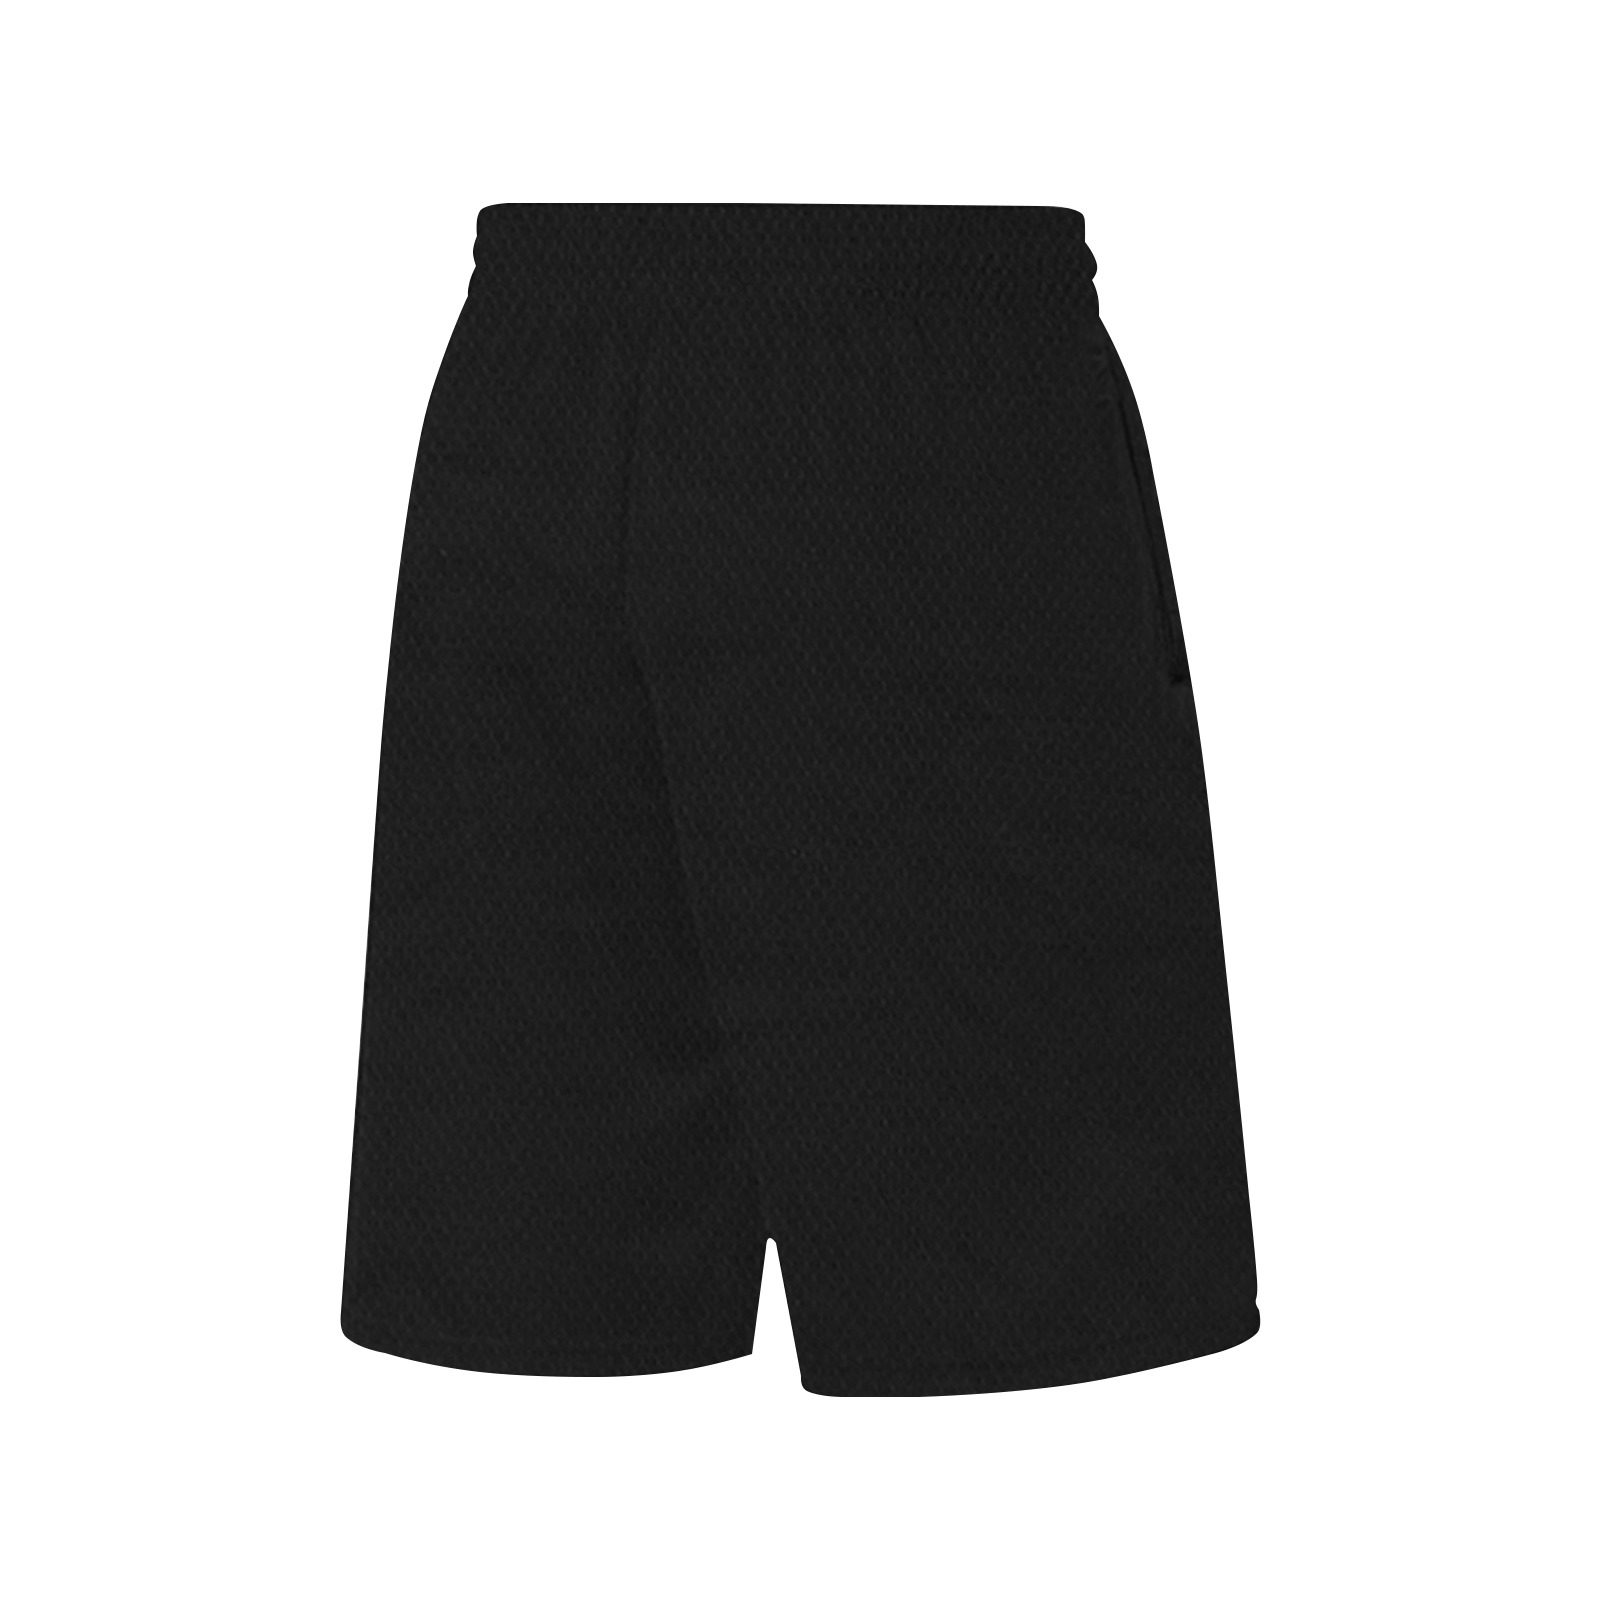 Rockstar Basketball shorts All Over Print Basketball Shorts with Pocket